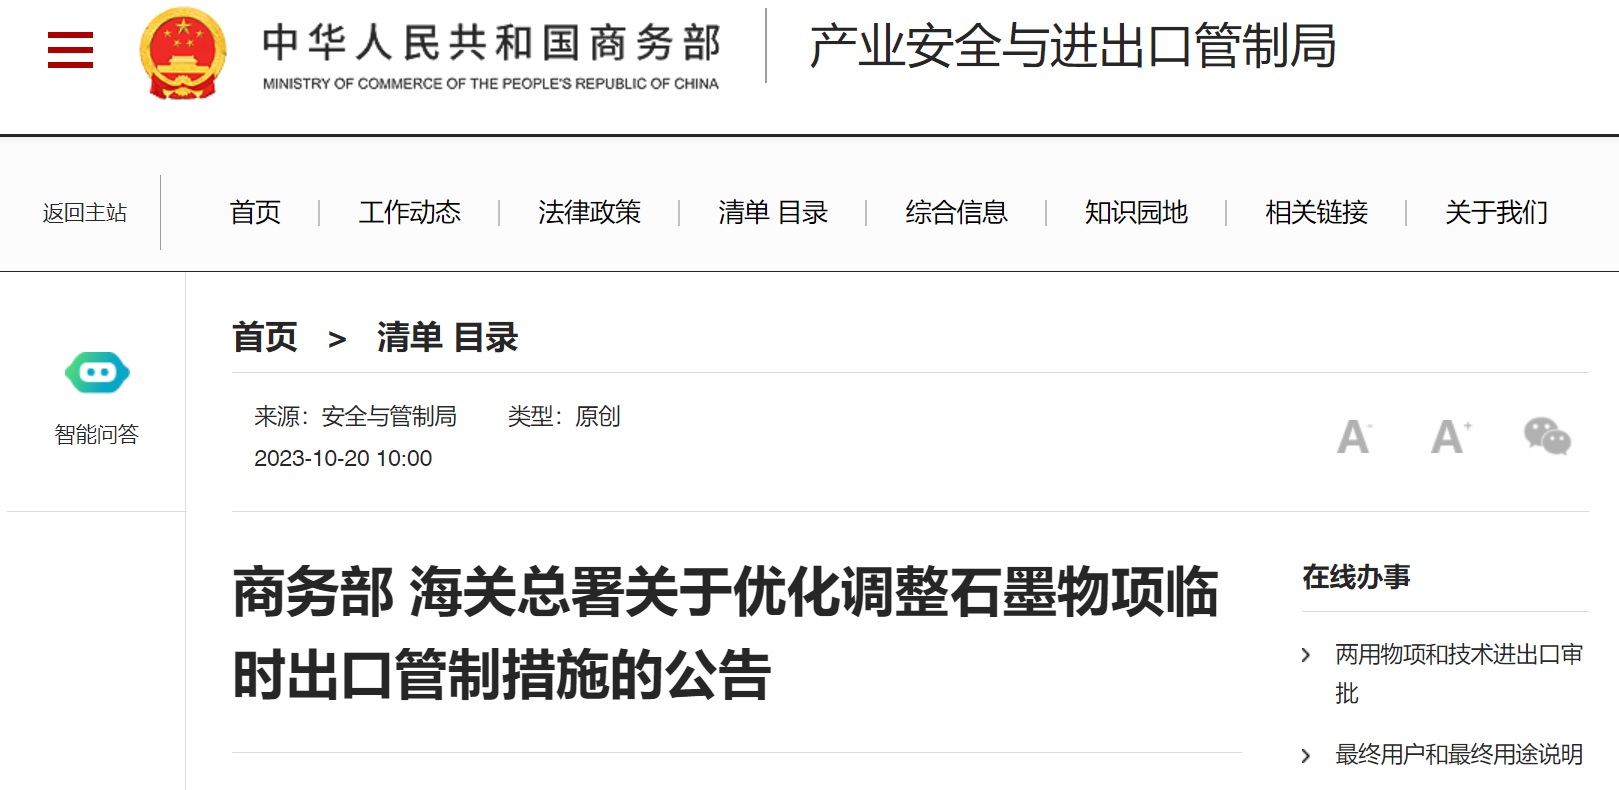  중국 상무부가 ‘흑연 수출 통제에 관한 통지’를 오늘(20일) 발표했다 